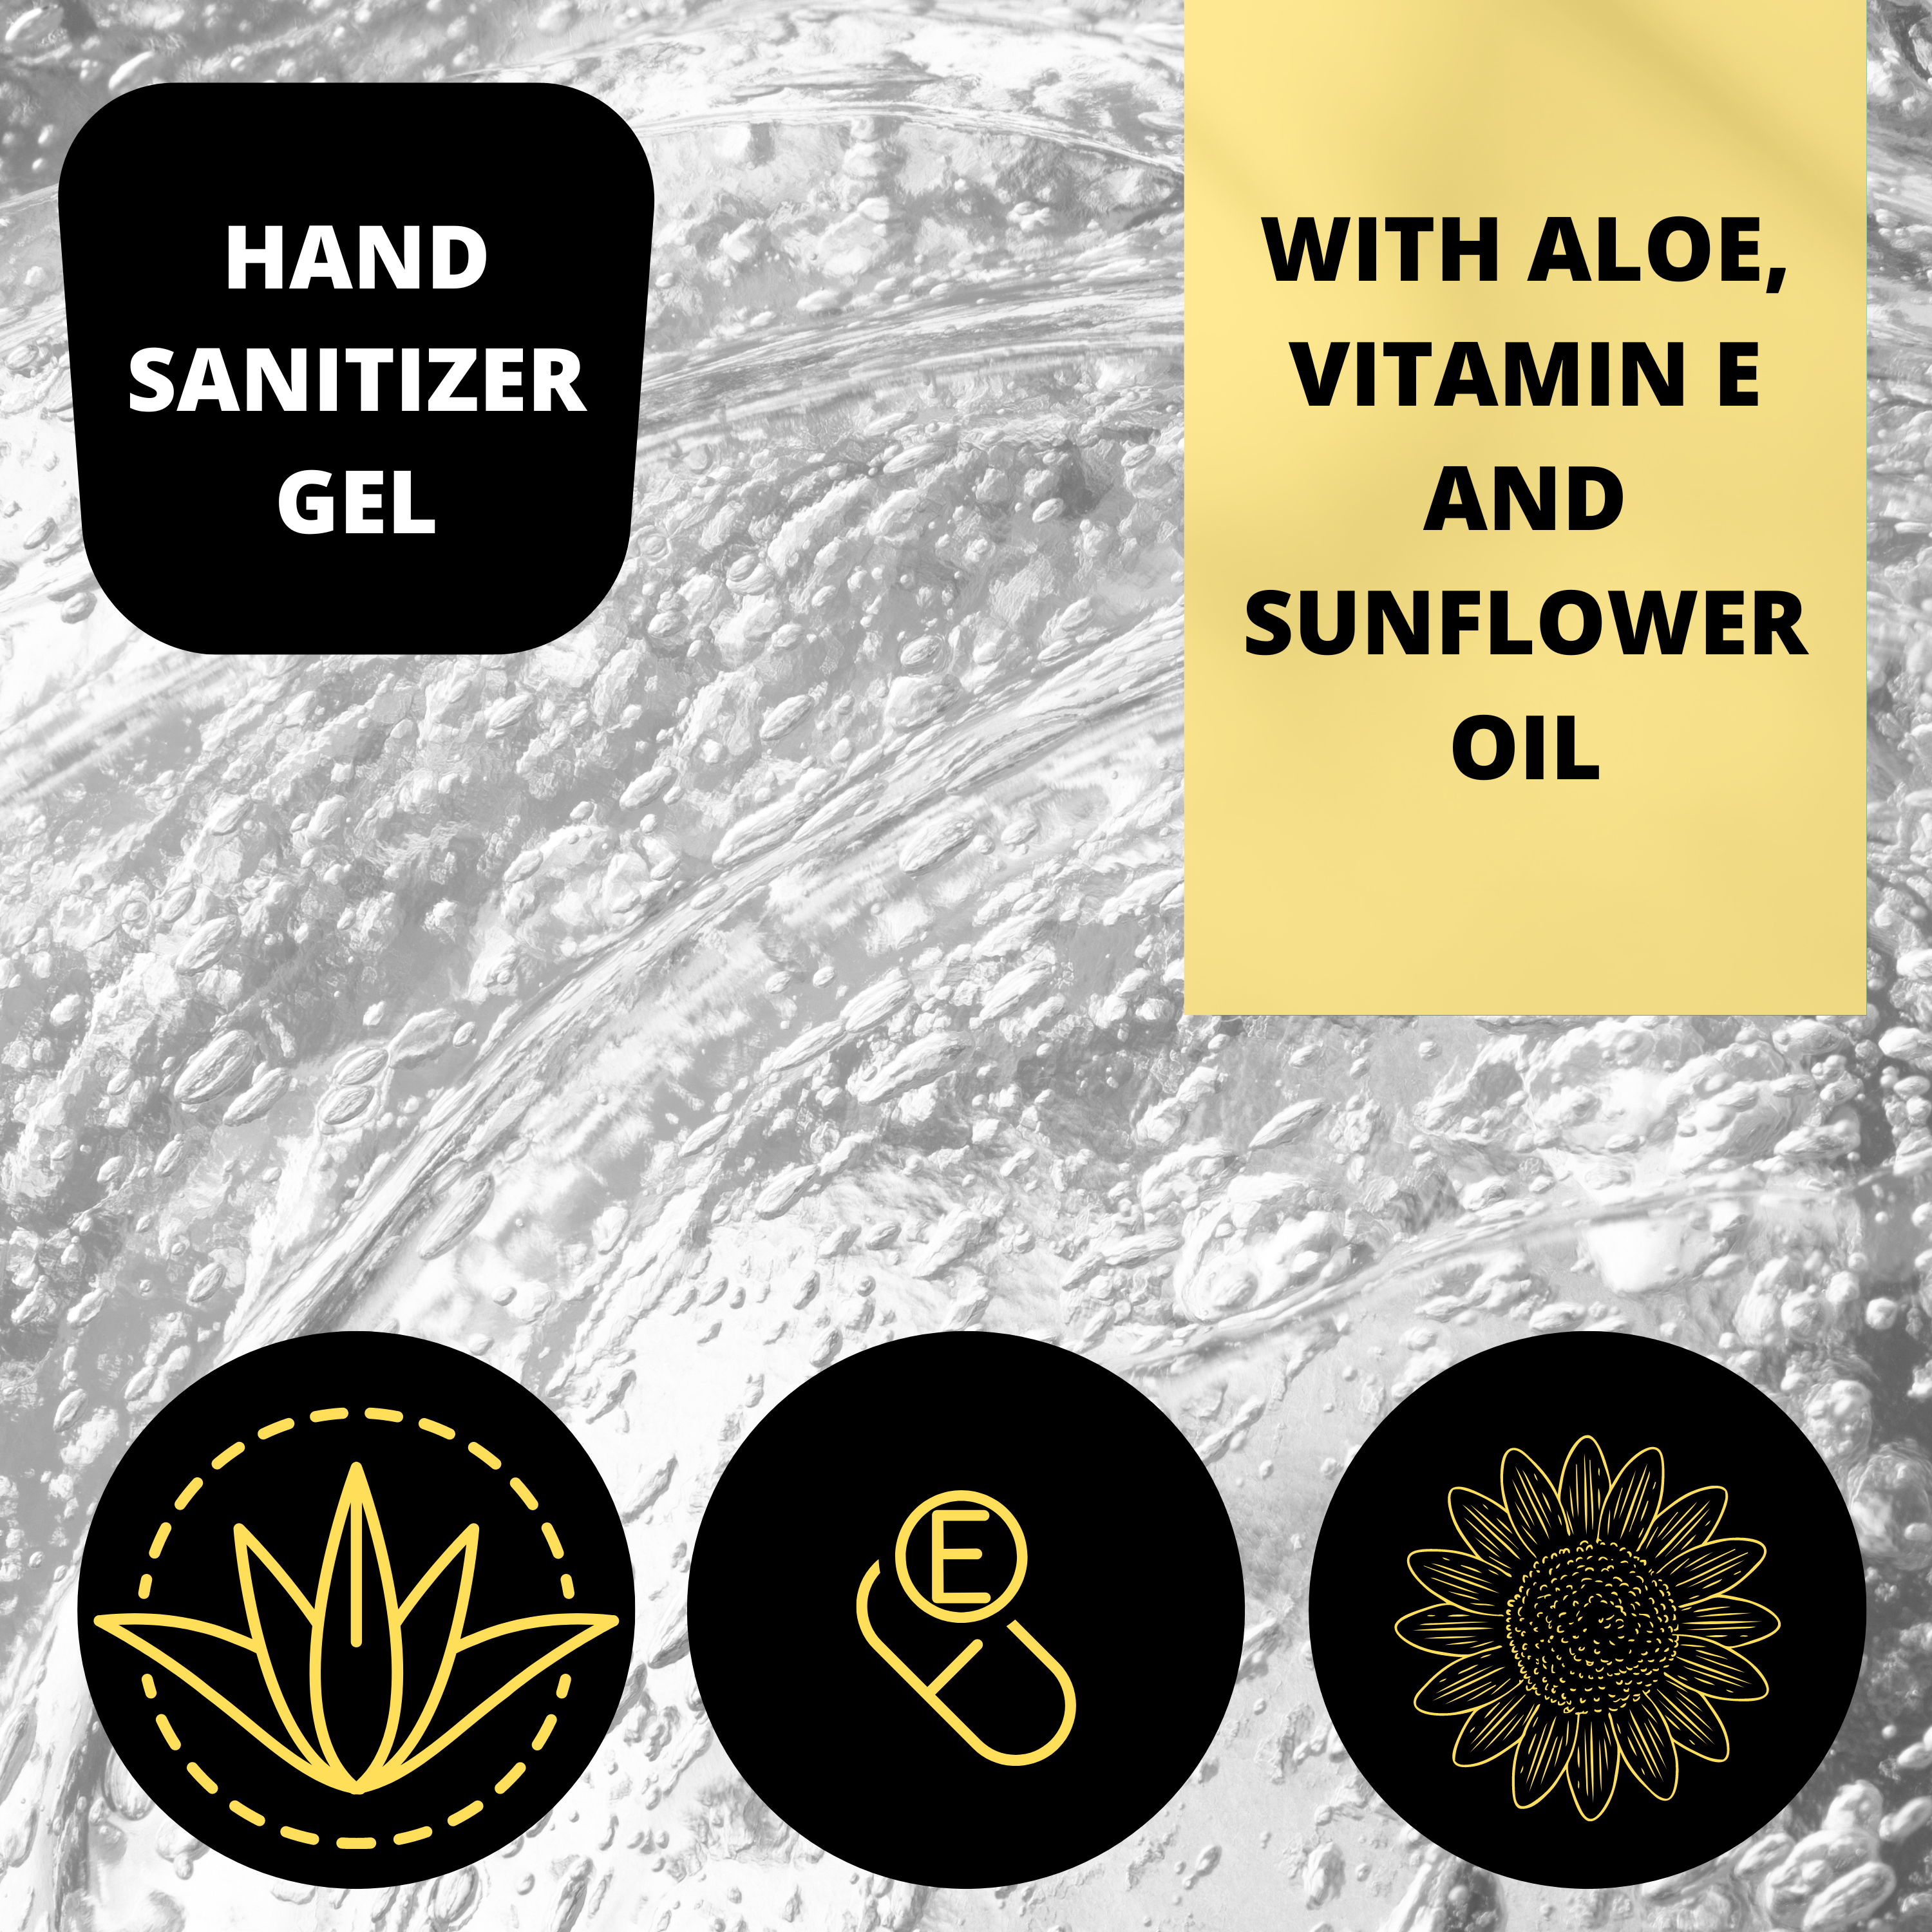 Black Canyon Iris & Orange Scented Hand Sanitizer Gel